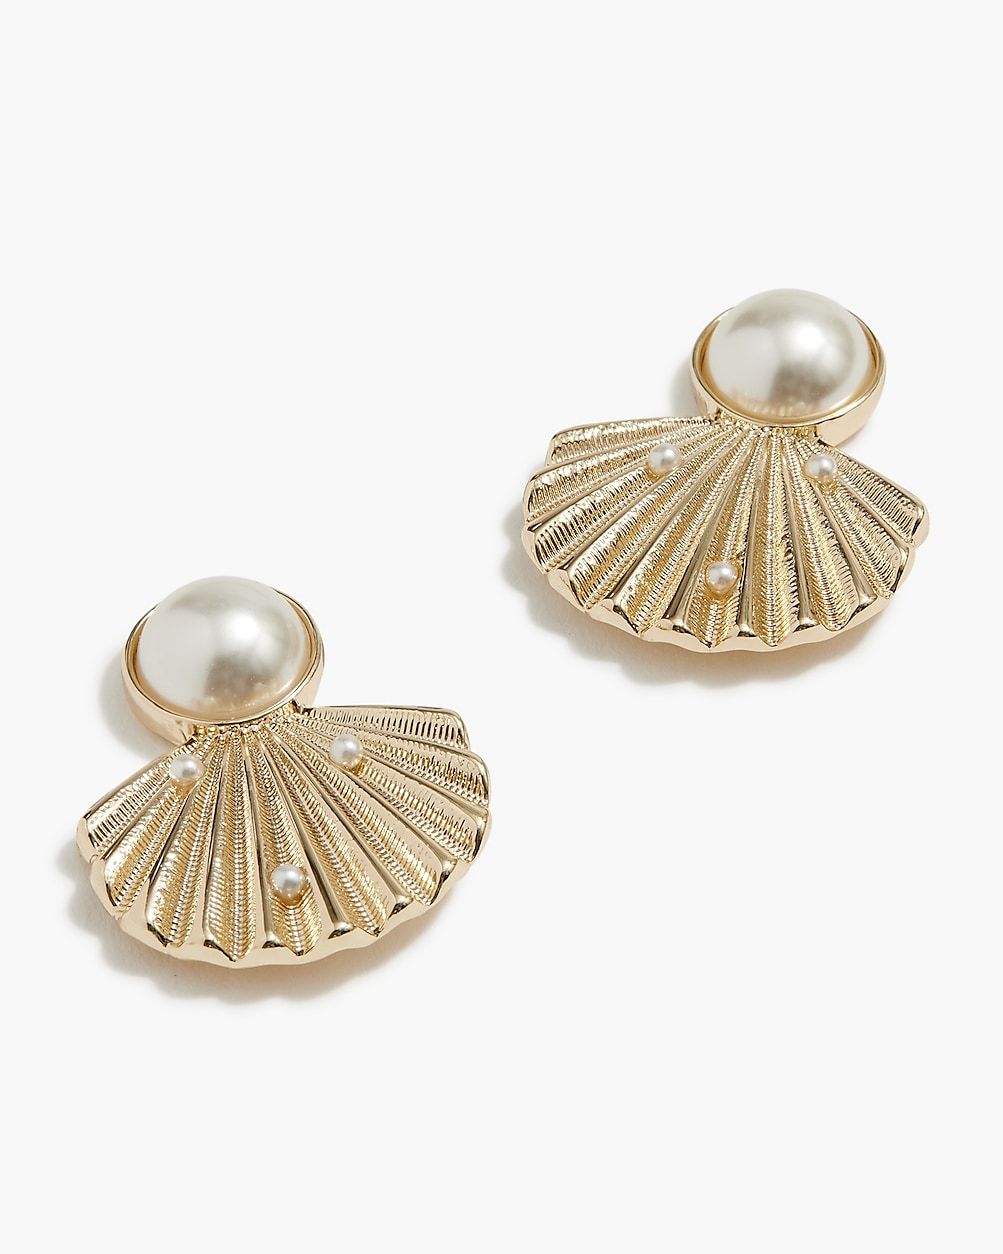 Pearl seashell statement earrings | J.Crew Factory